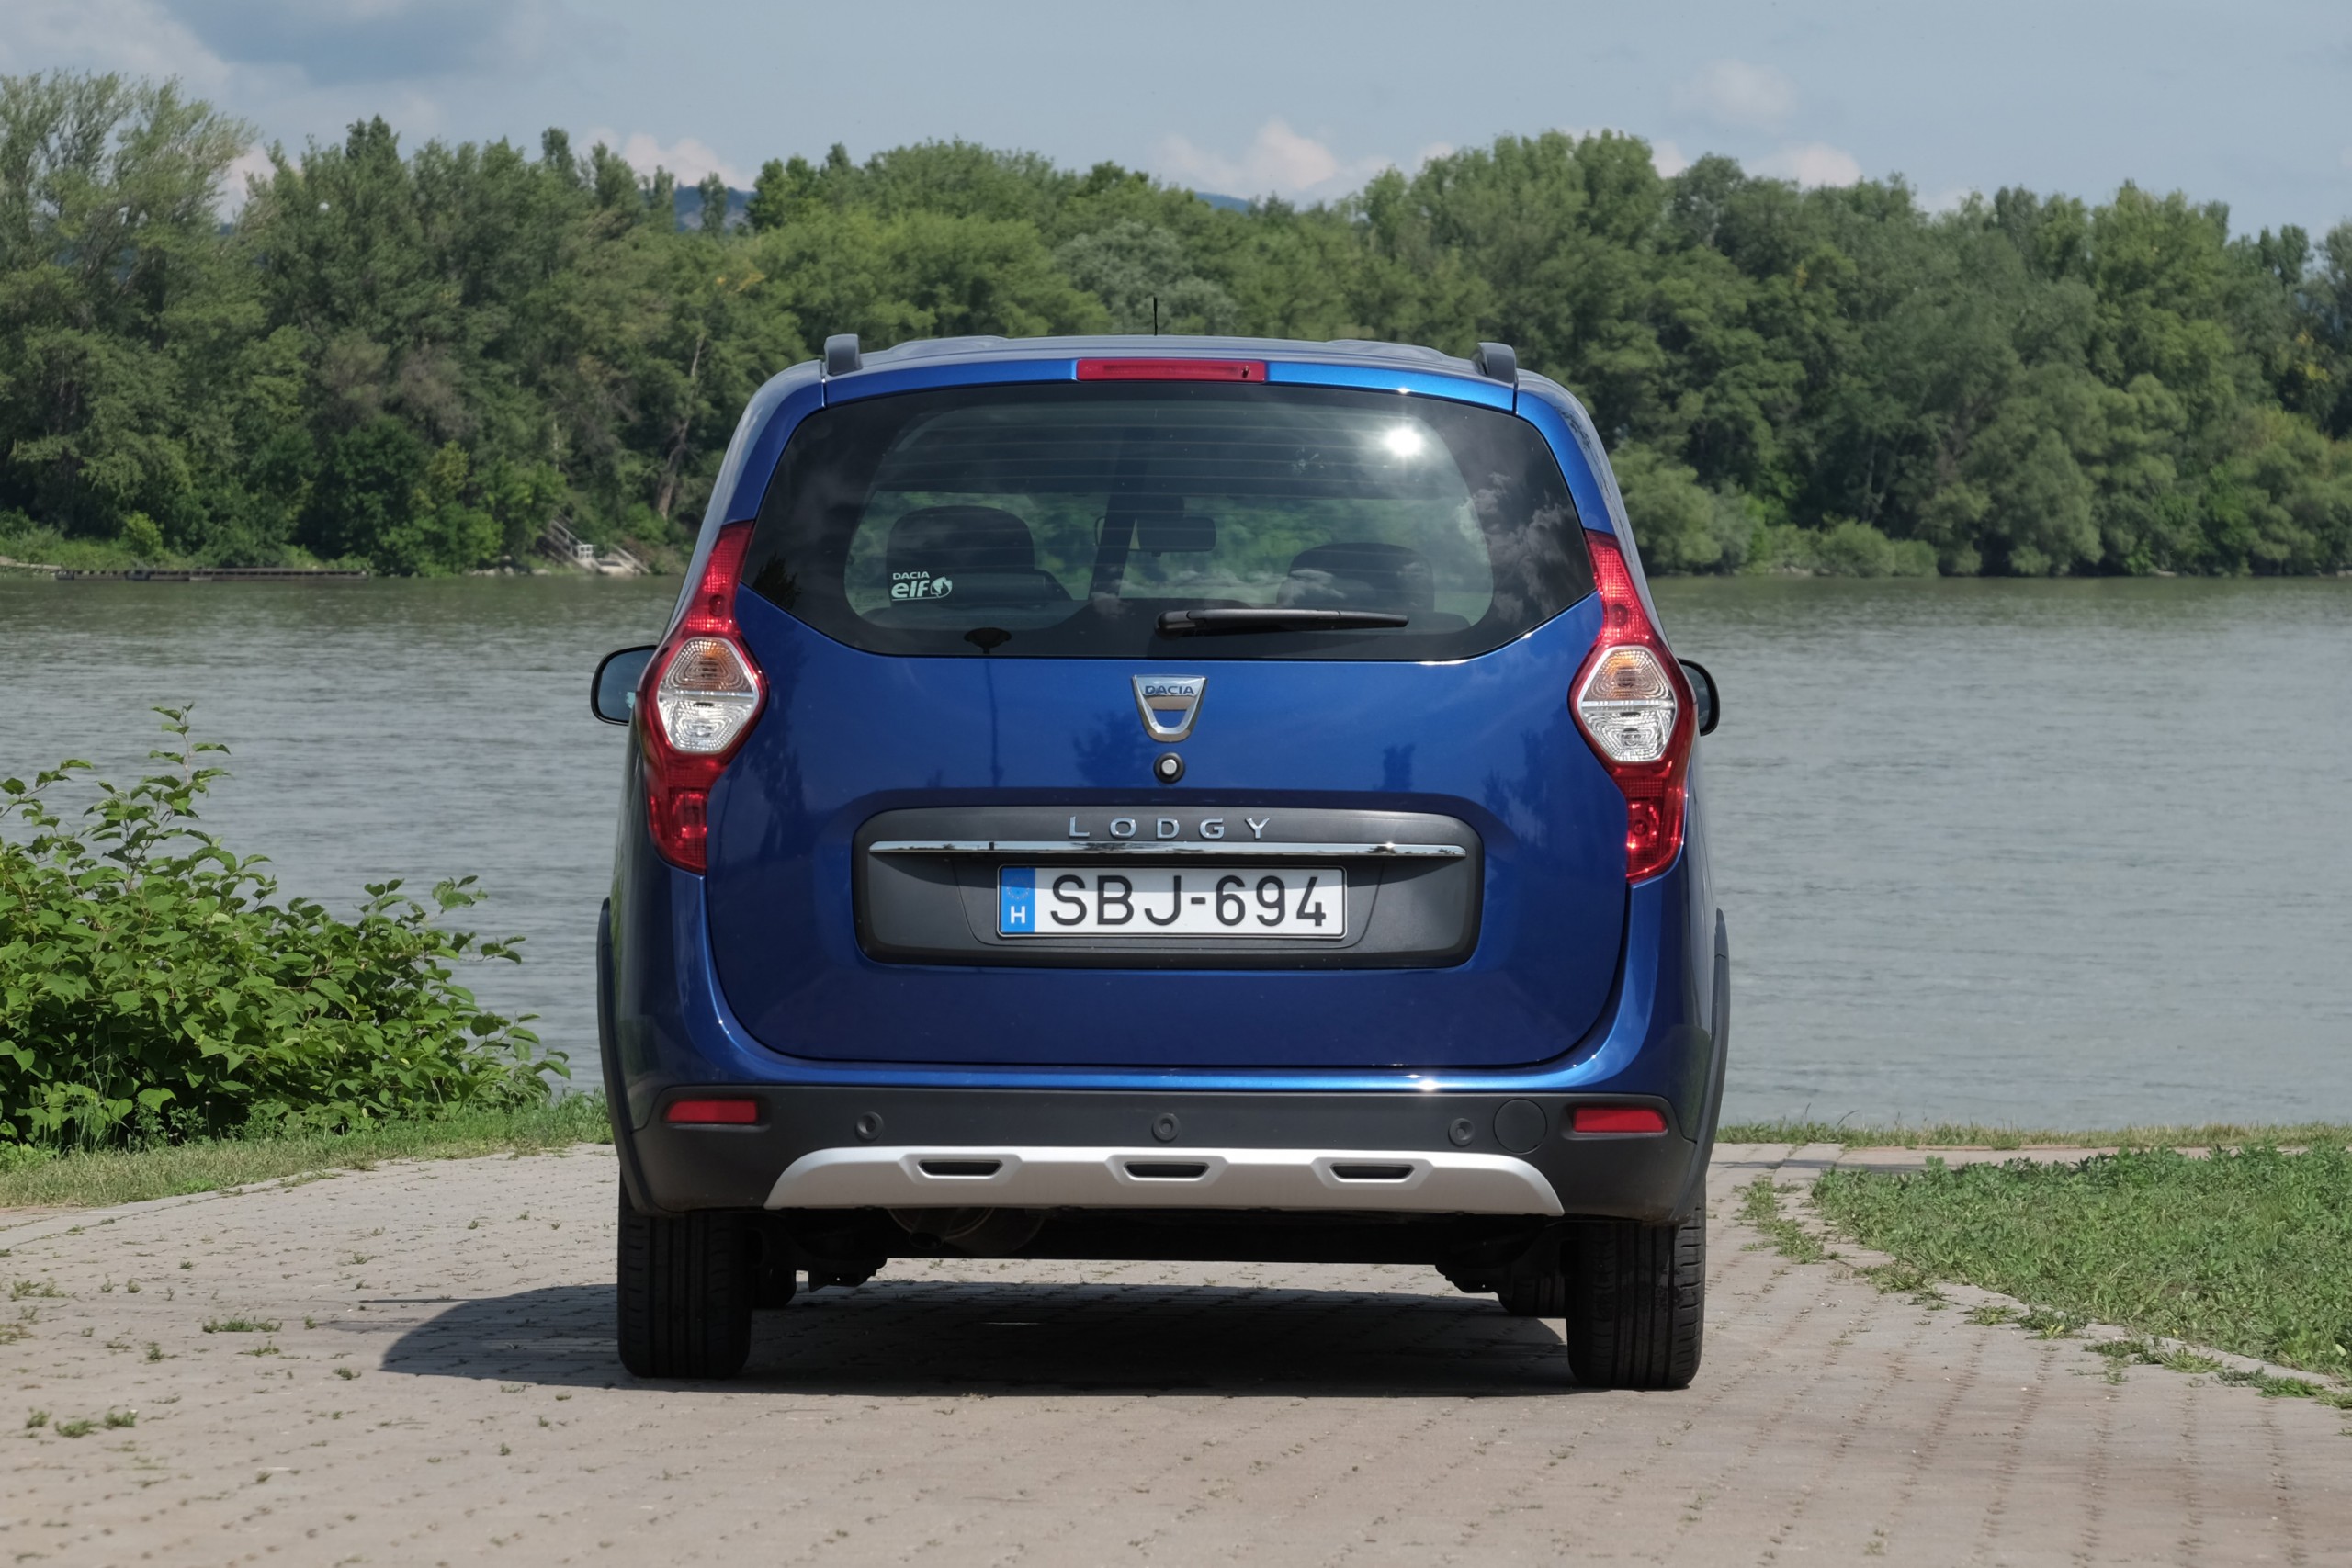 Kis pénzért nagy autó – Dacia Lodgy teszt 8